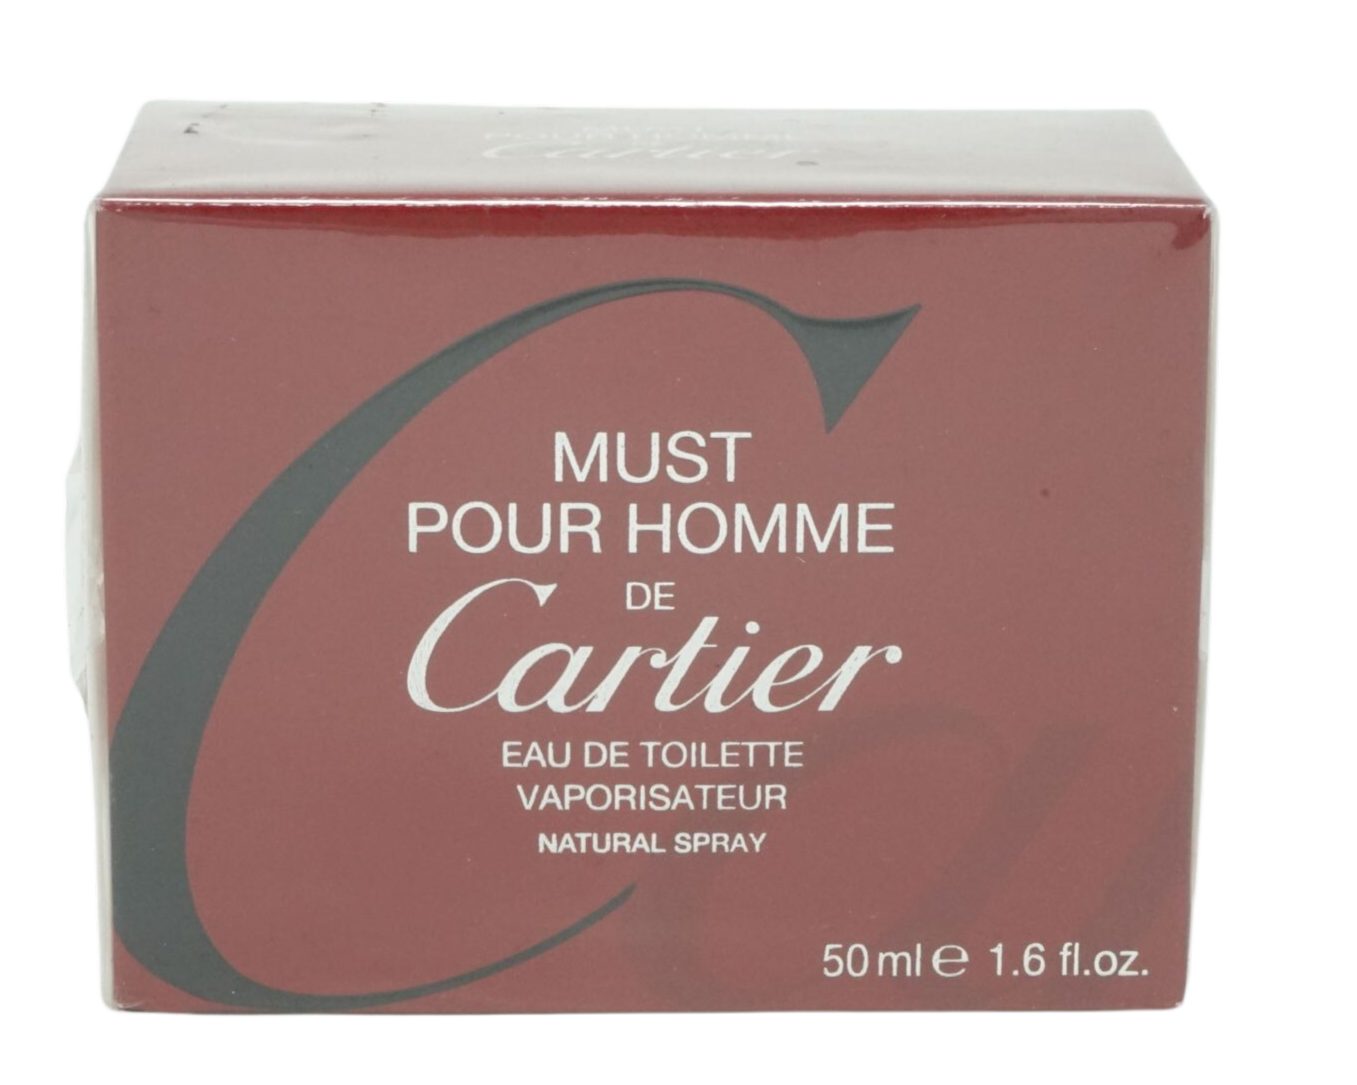 Cartier CARTIER Pour 50ml de de Eau Toilette Cartier Selbstbräunungstücher must Homme